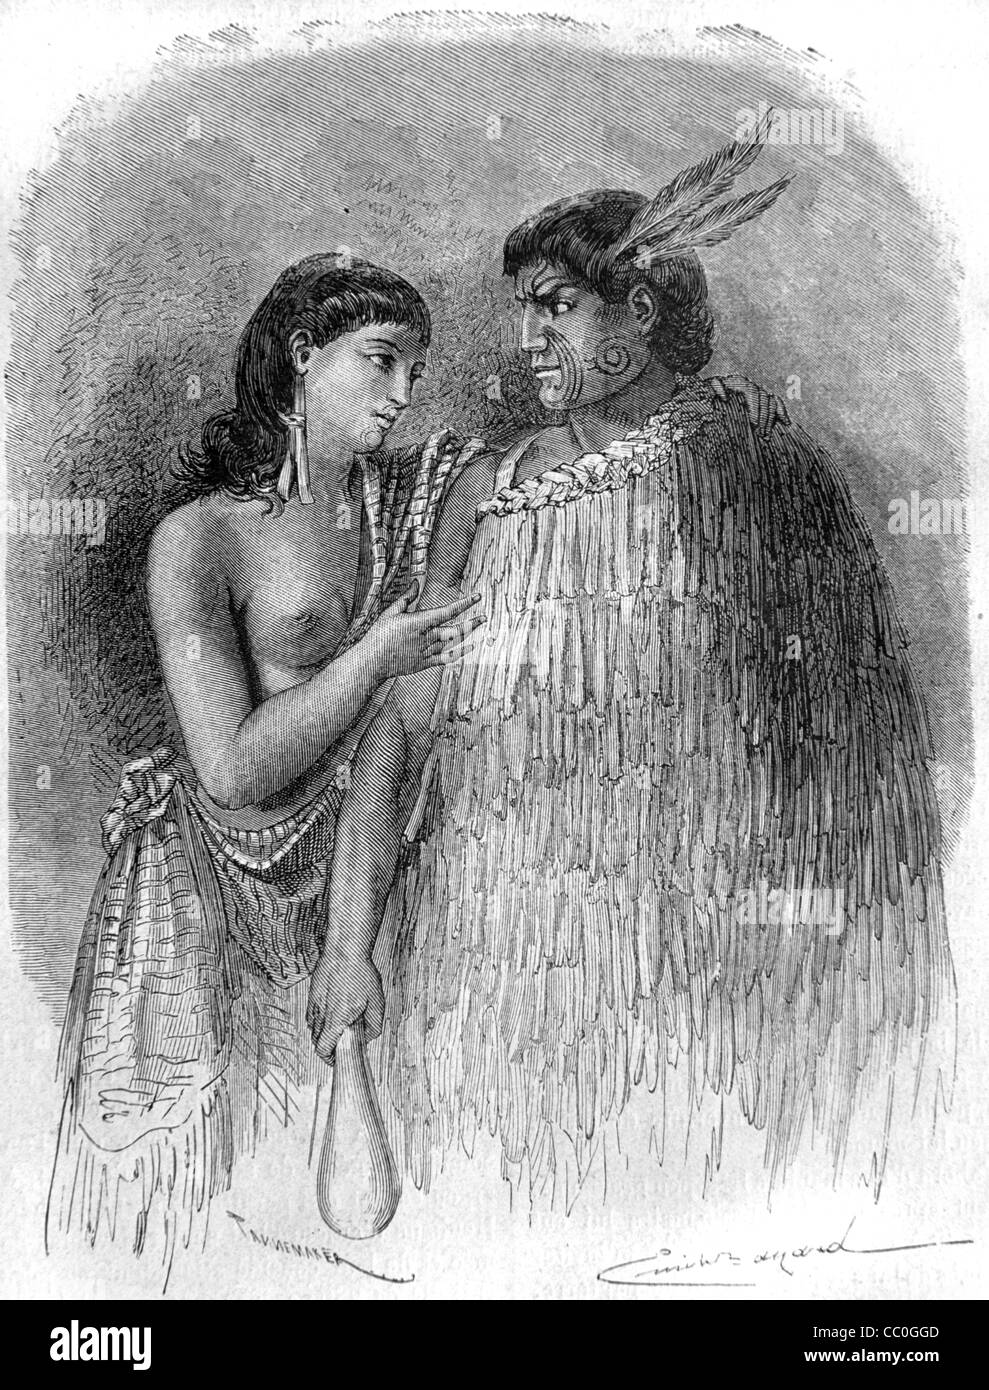 Hone Heke, oder Hone Wiremu Heke Pakai (1807?-1850), Maori-Chef und Anführer, und Ehefrau, Neuseeland. Anstifter des Flagstaff-Krieges. Vintage Illustration oder Gravur Stockfoto